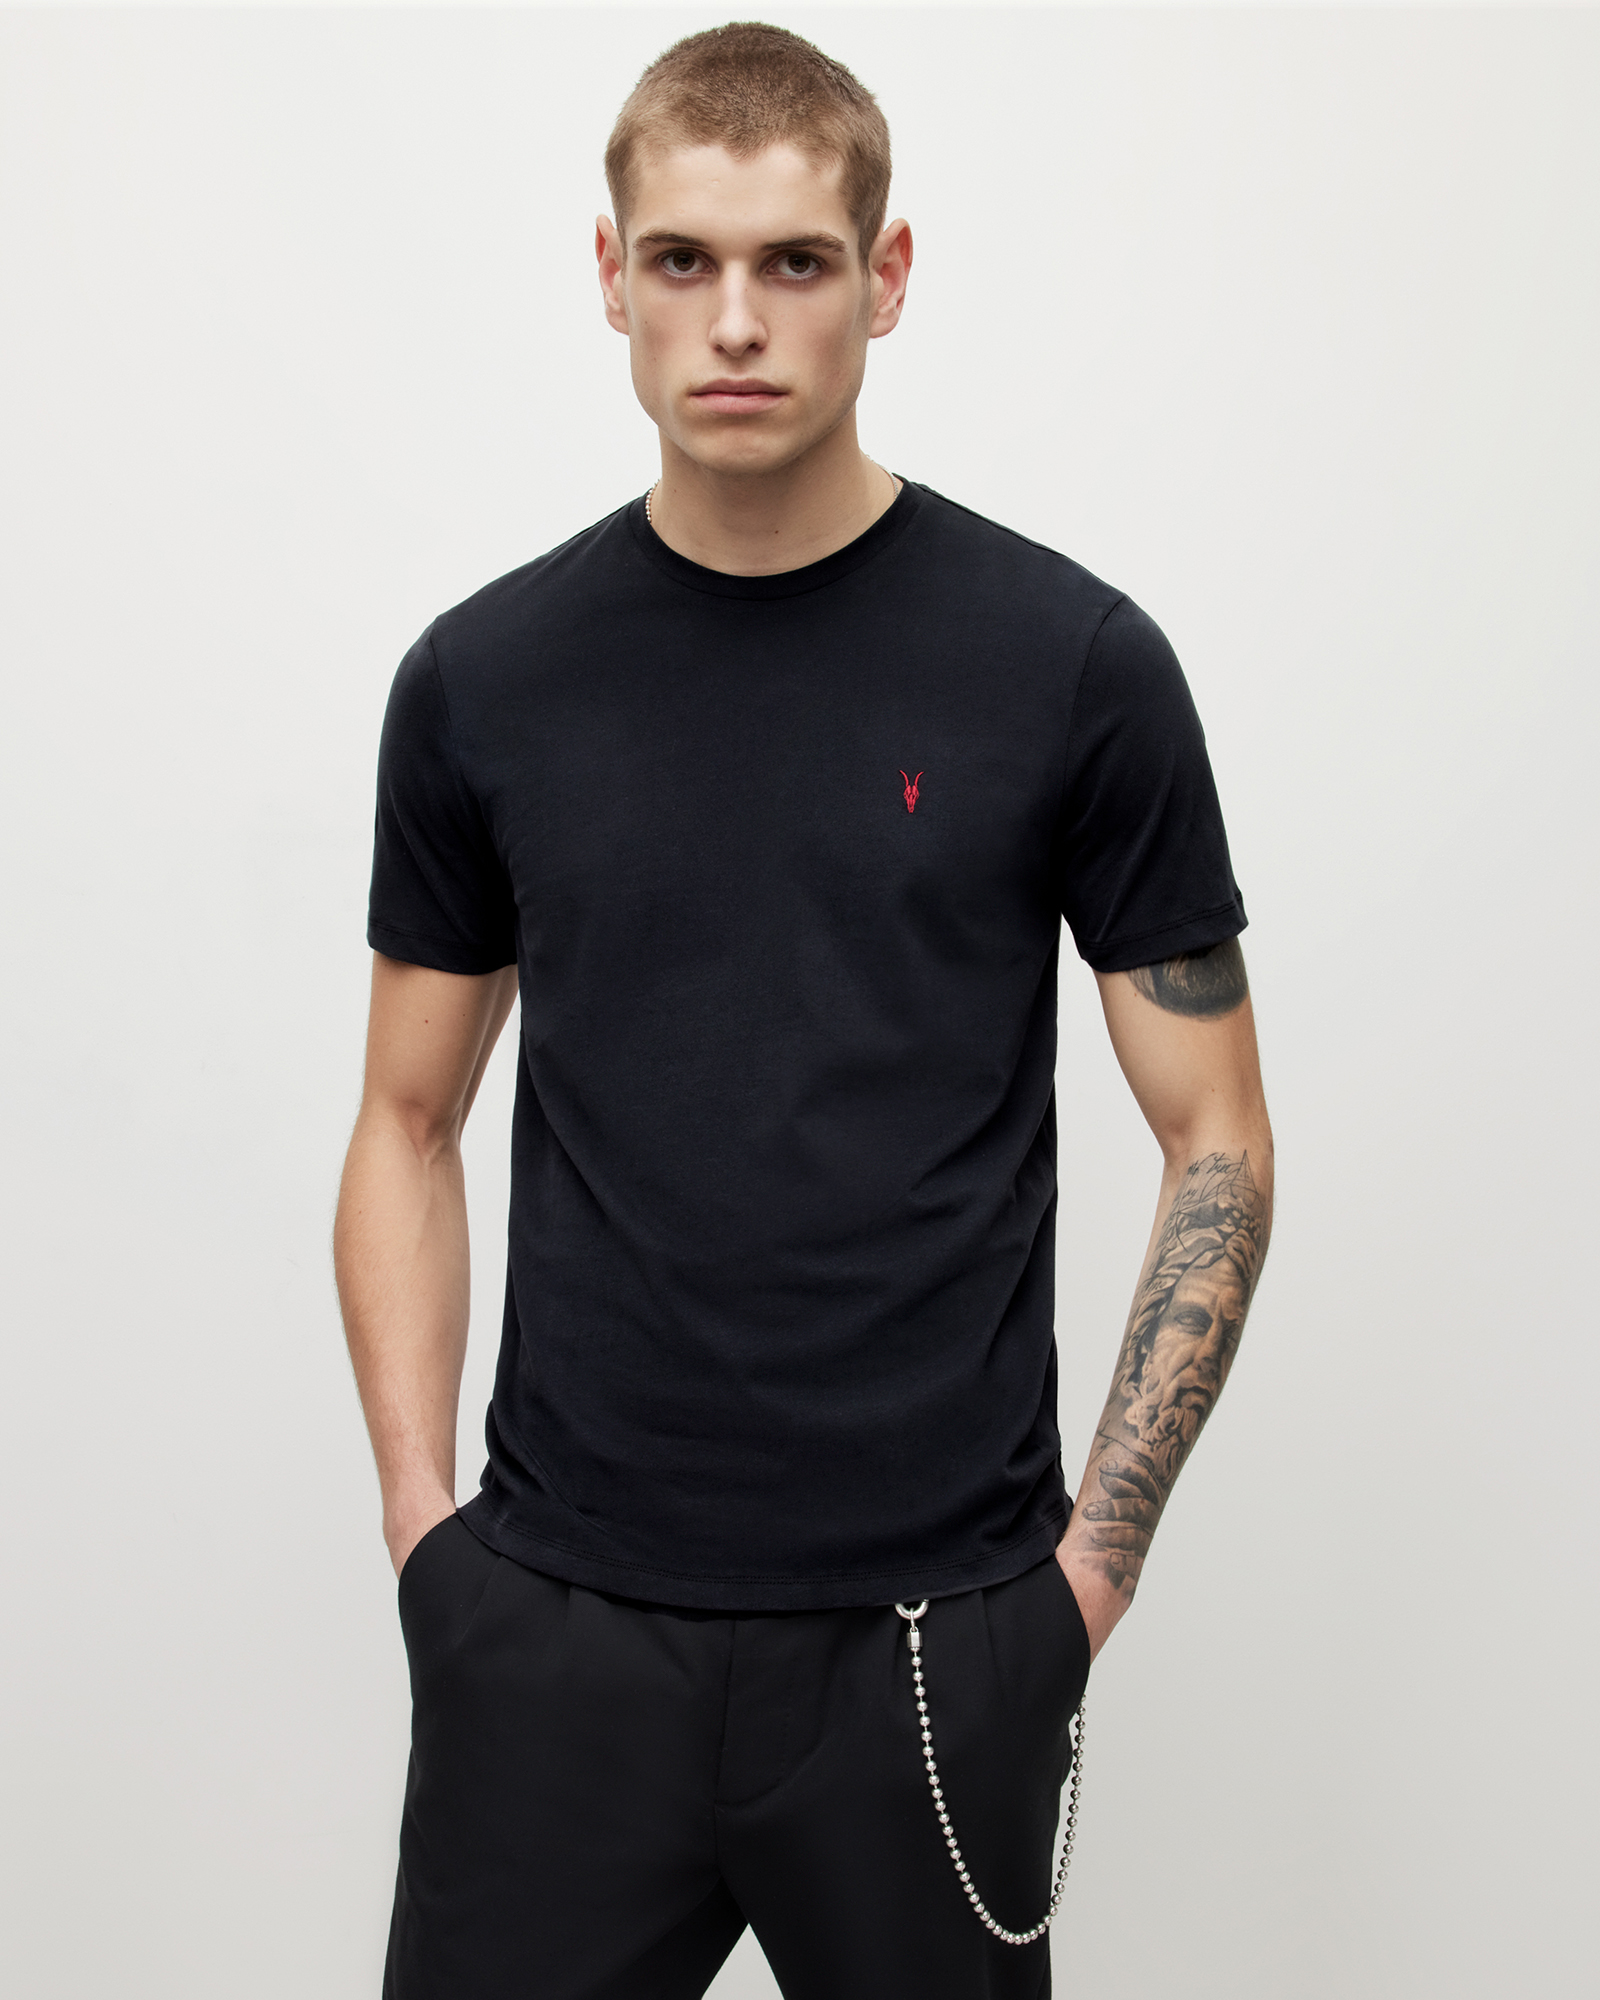 AllSaints Men's Brace Contrast Crew T-Shirt, Washed Black, Size: M